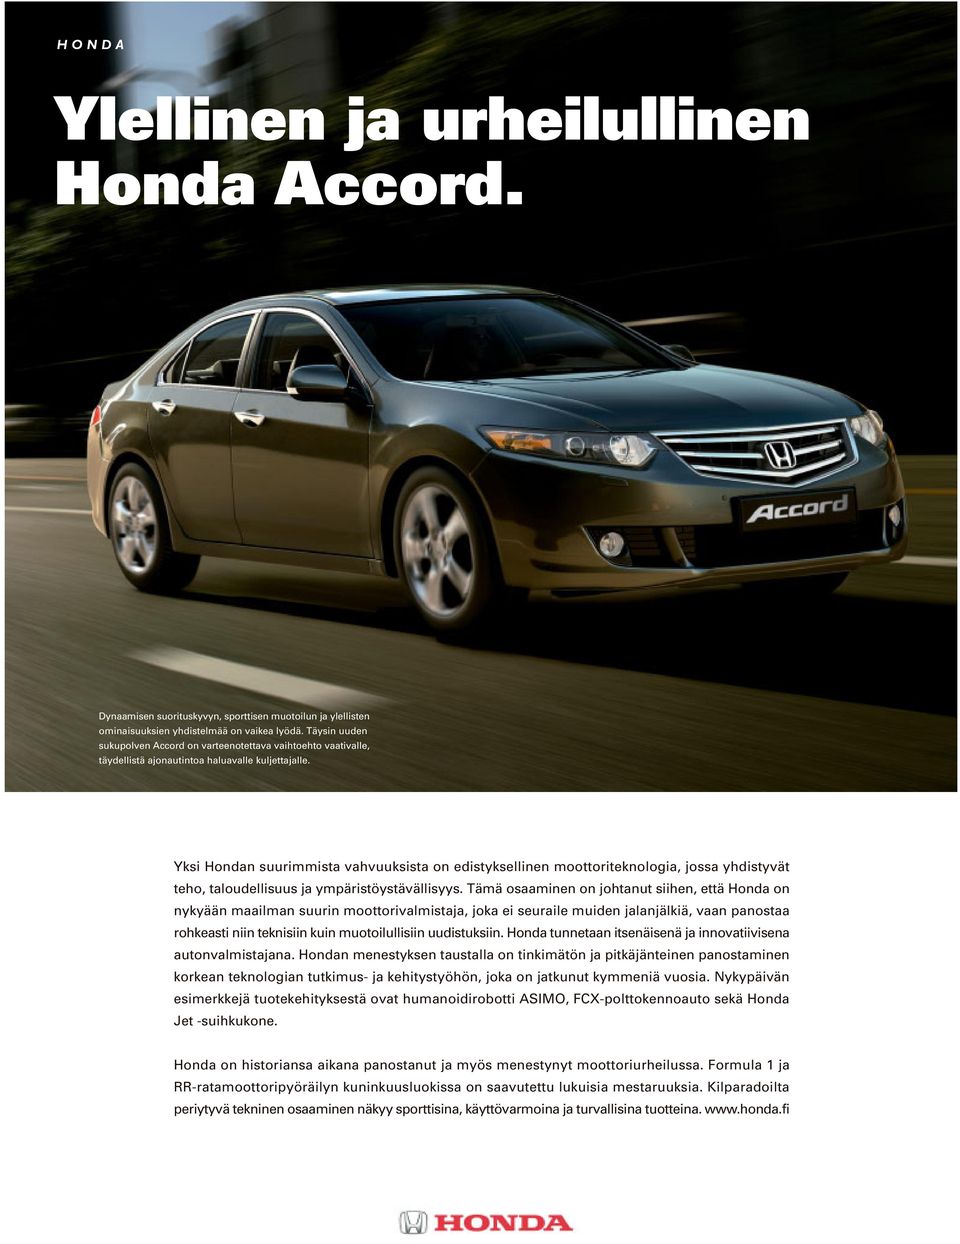 Yksi Hondan suurimmista vahvuuksista on edistyksellinen moottoriteknologia, jossa yhdistyvät teho, taloudellisuus ja ympäristöystävällisyys.